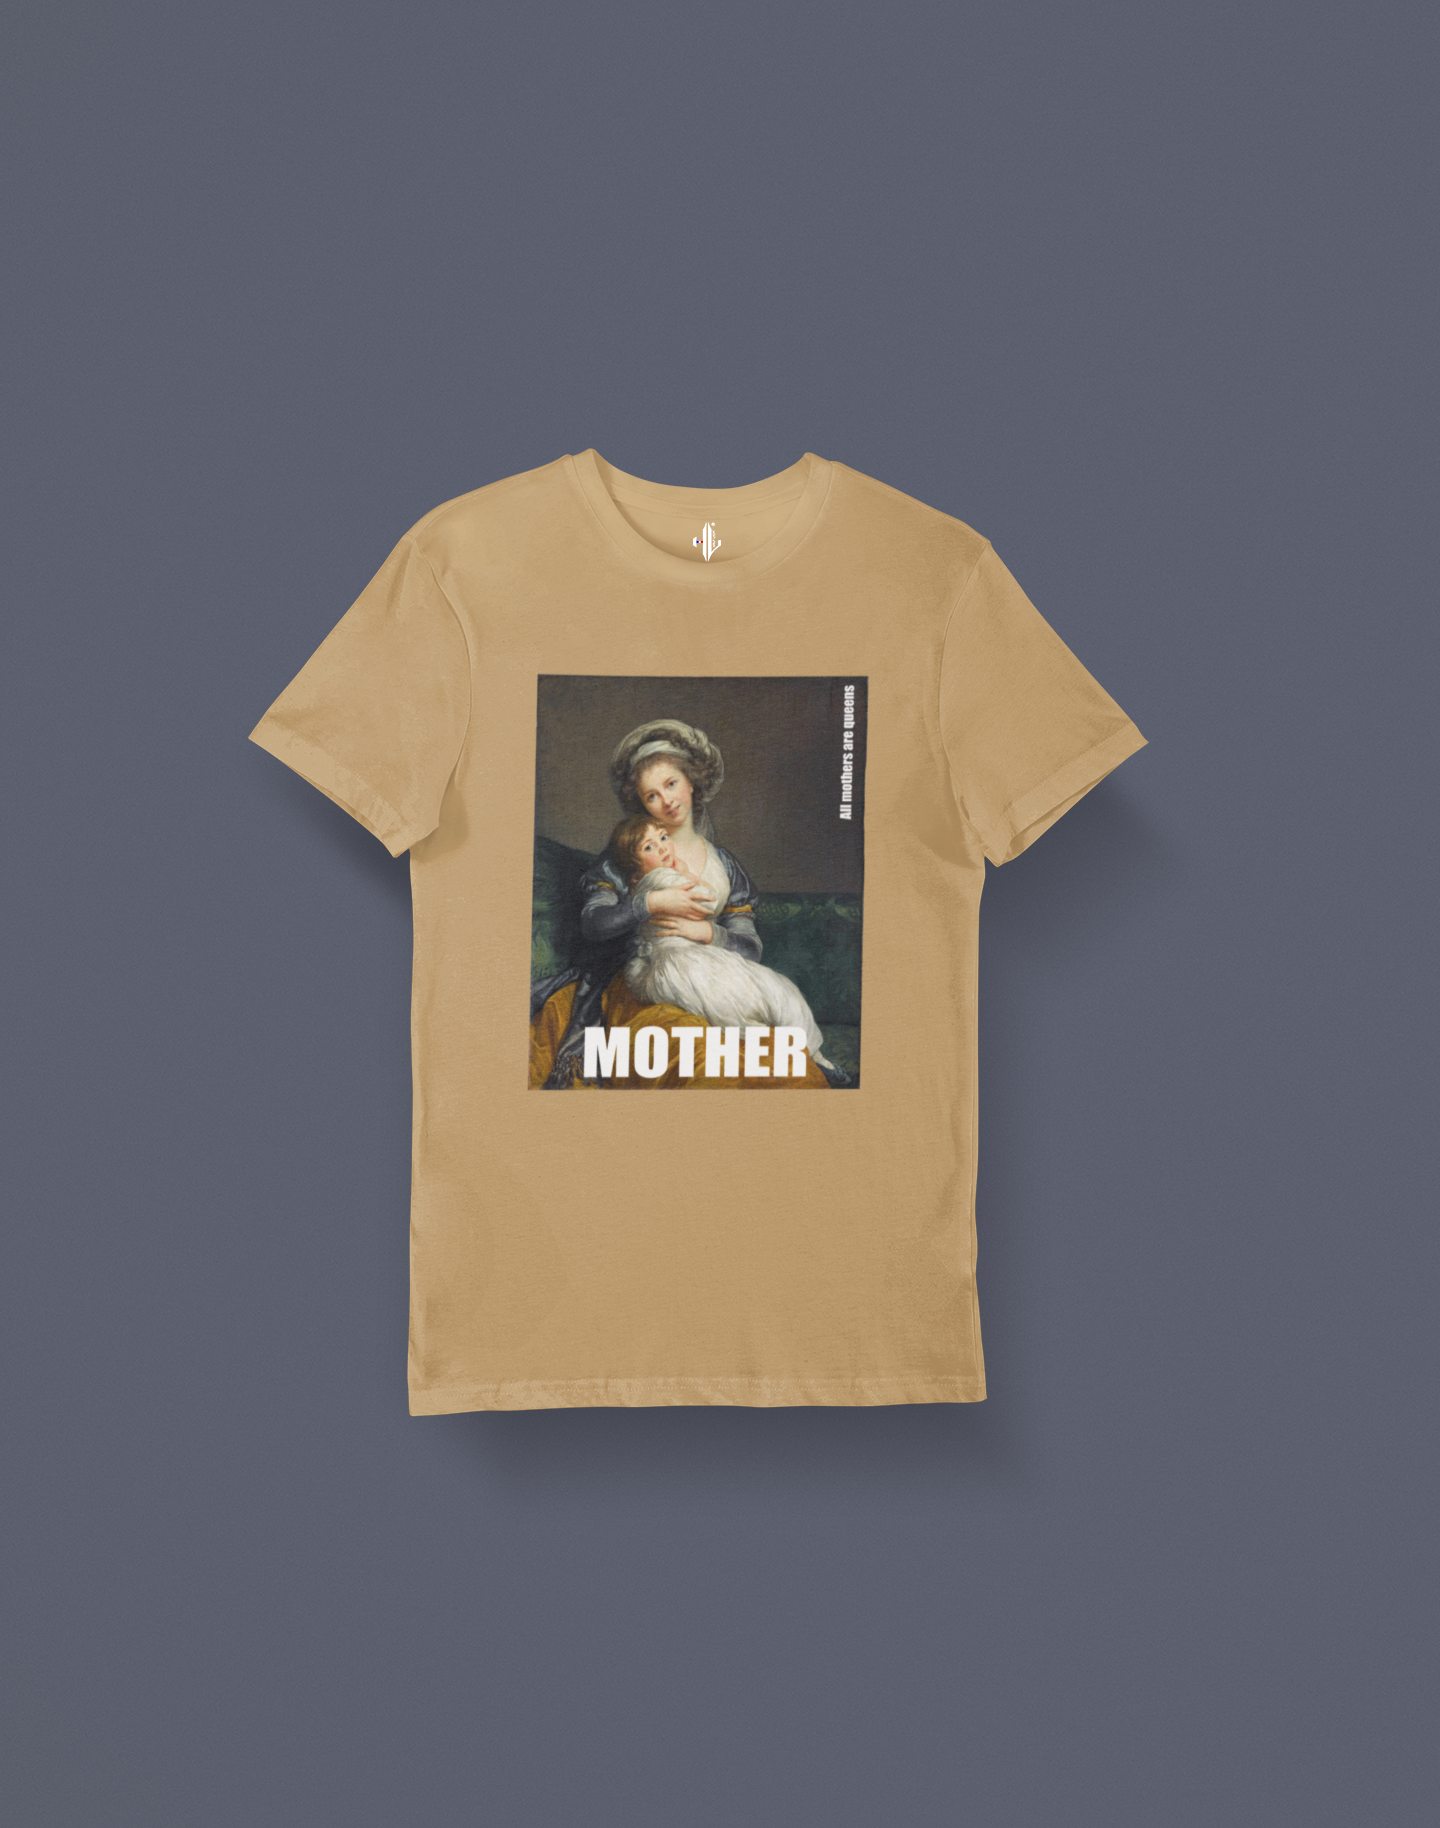 T-shirt "MOTHER"